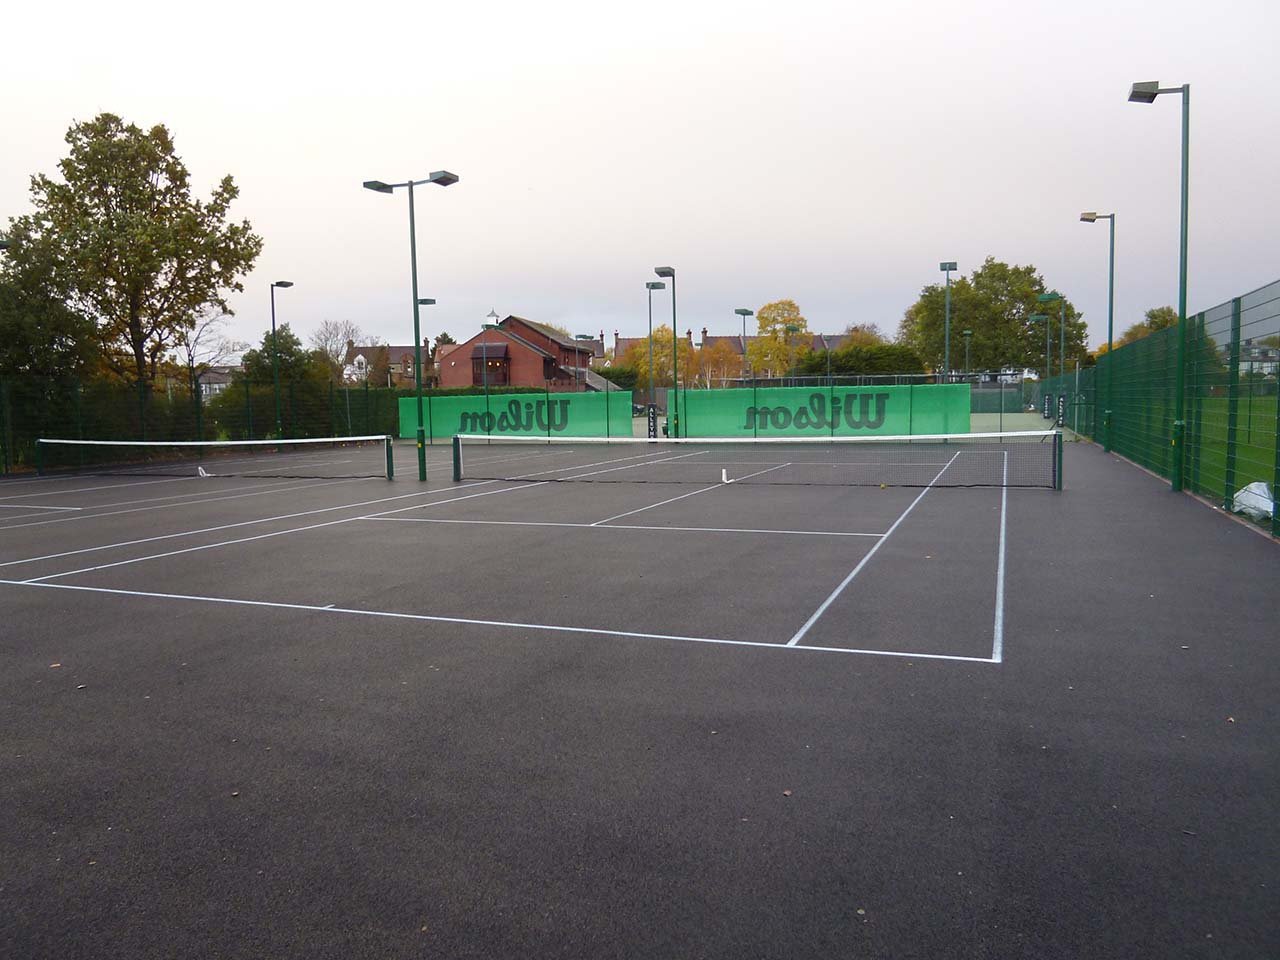 Dulwich Lawn Tennis Club